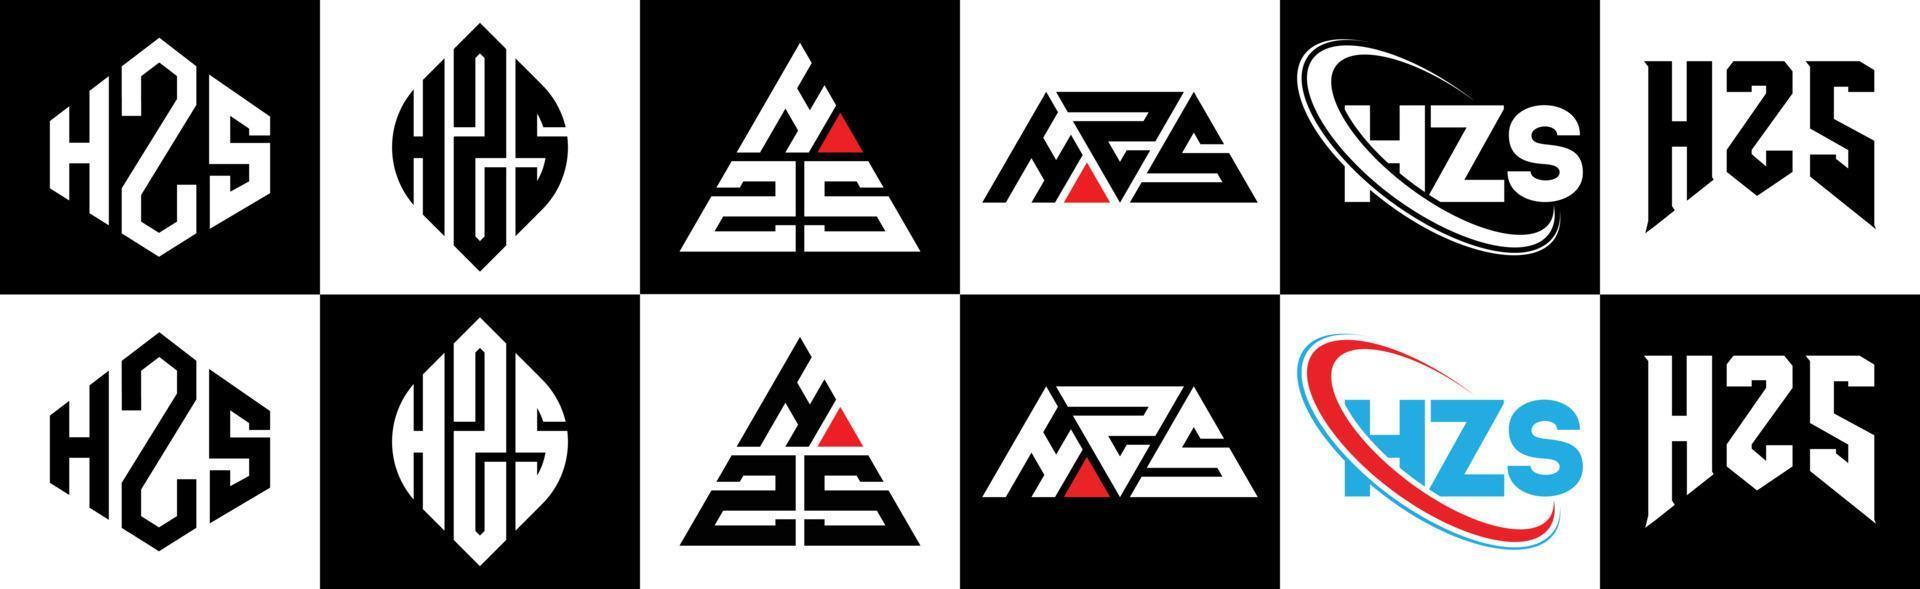 hzs-Buchstaben-Logo-Design in sechs Stilen. hzs polygon, kreis, dreieck, hexagon, flacher und einfacher stil mit schwarz-weißem buchstabenlogo in einer zeichenfläche. hzs minimalistisches und klassisches Logo vektor